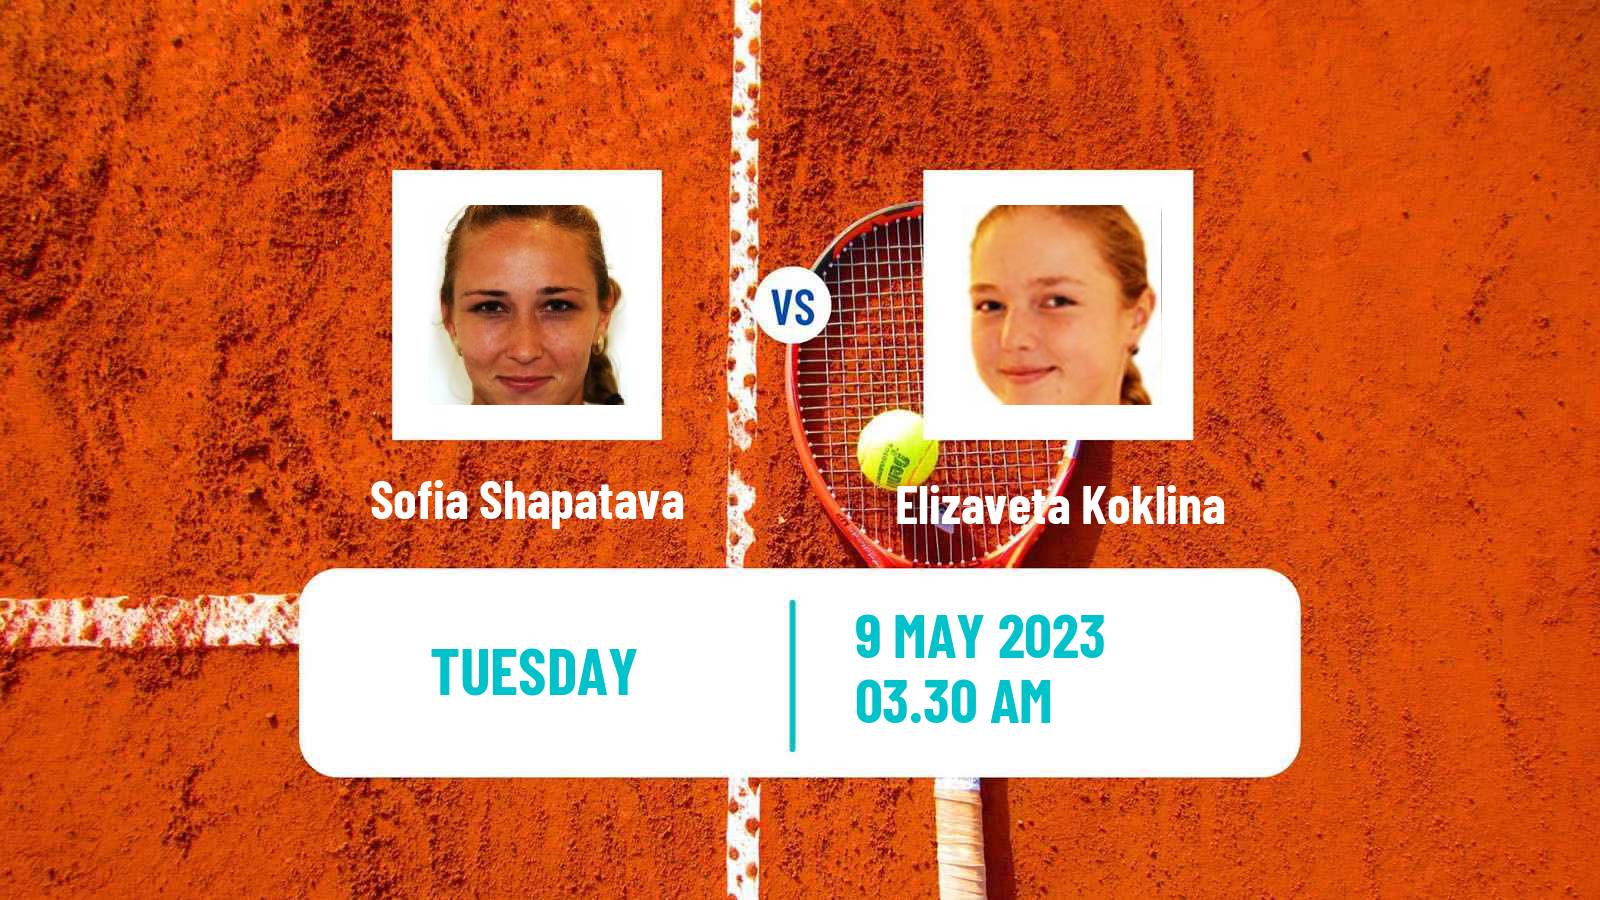 Tennis ITF Tournaments Sofia Shapatava - Elizaveta Koklina